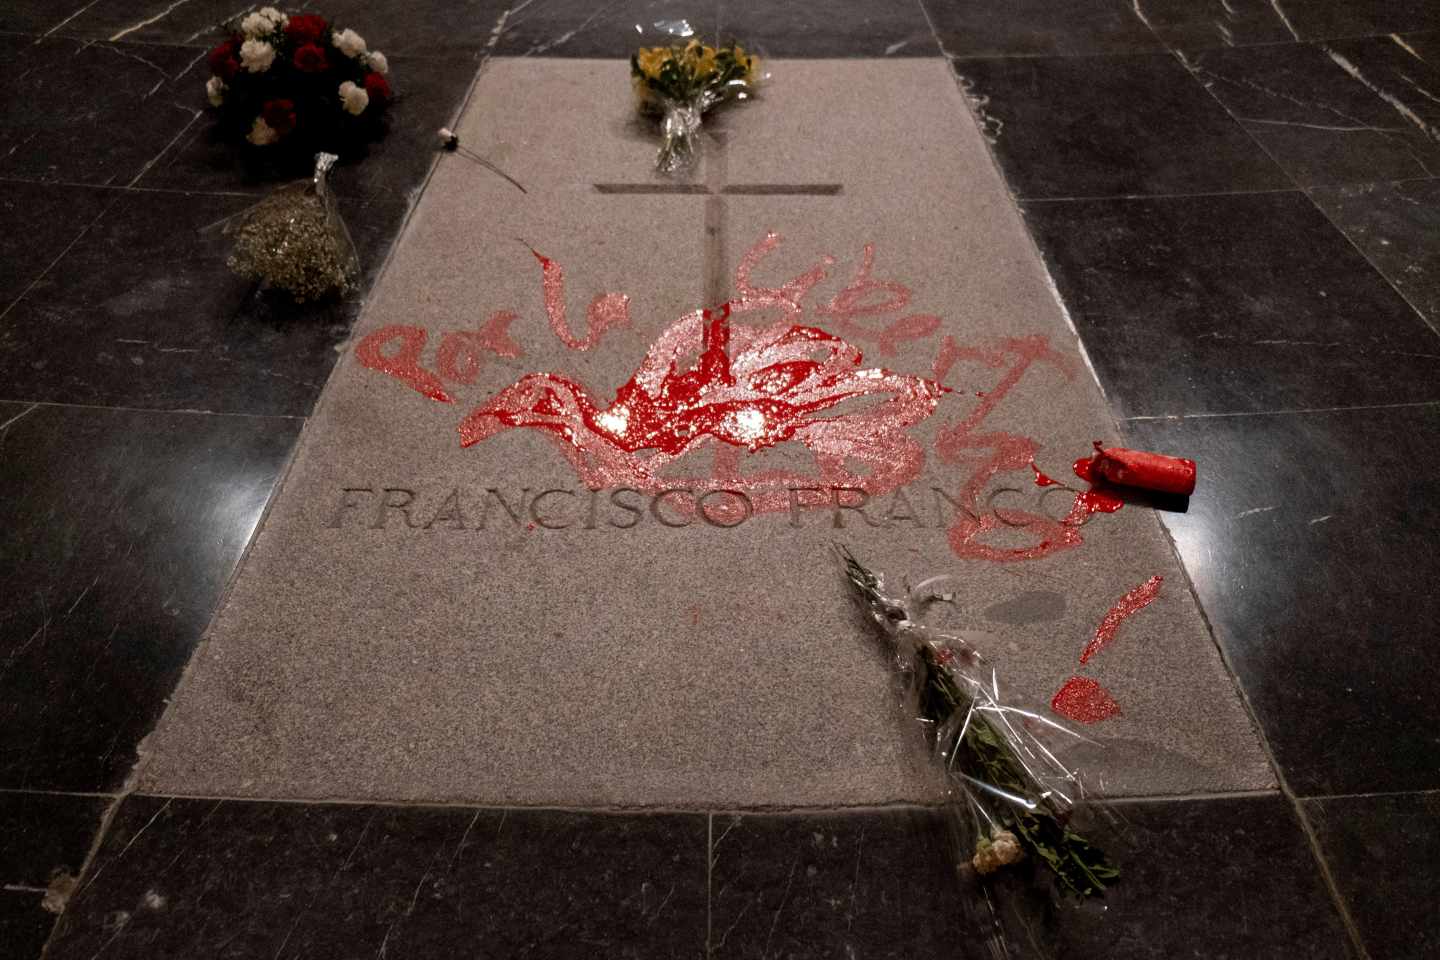 La tumba de Franco pintada de rojo.